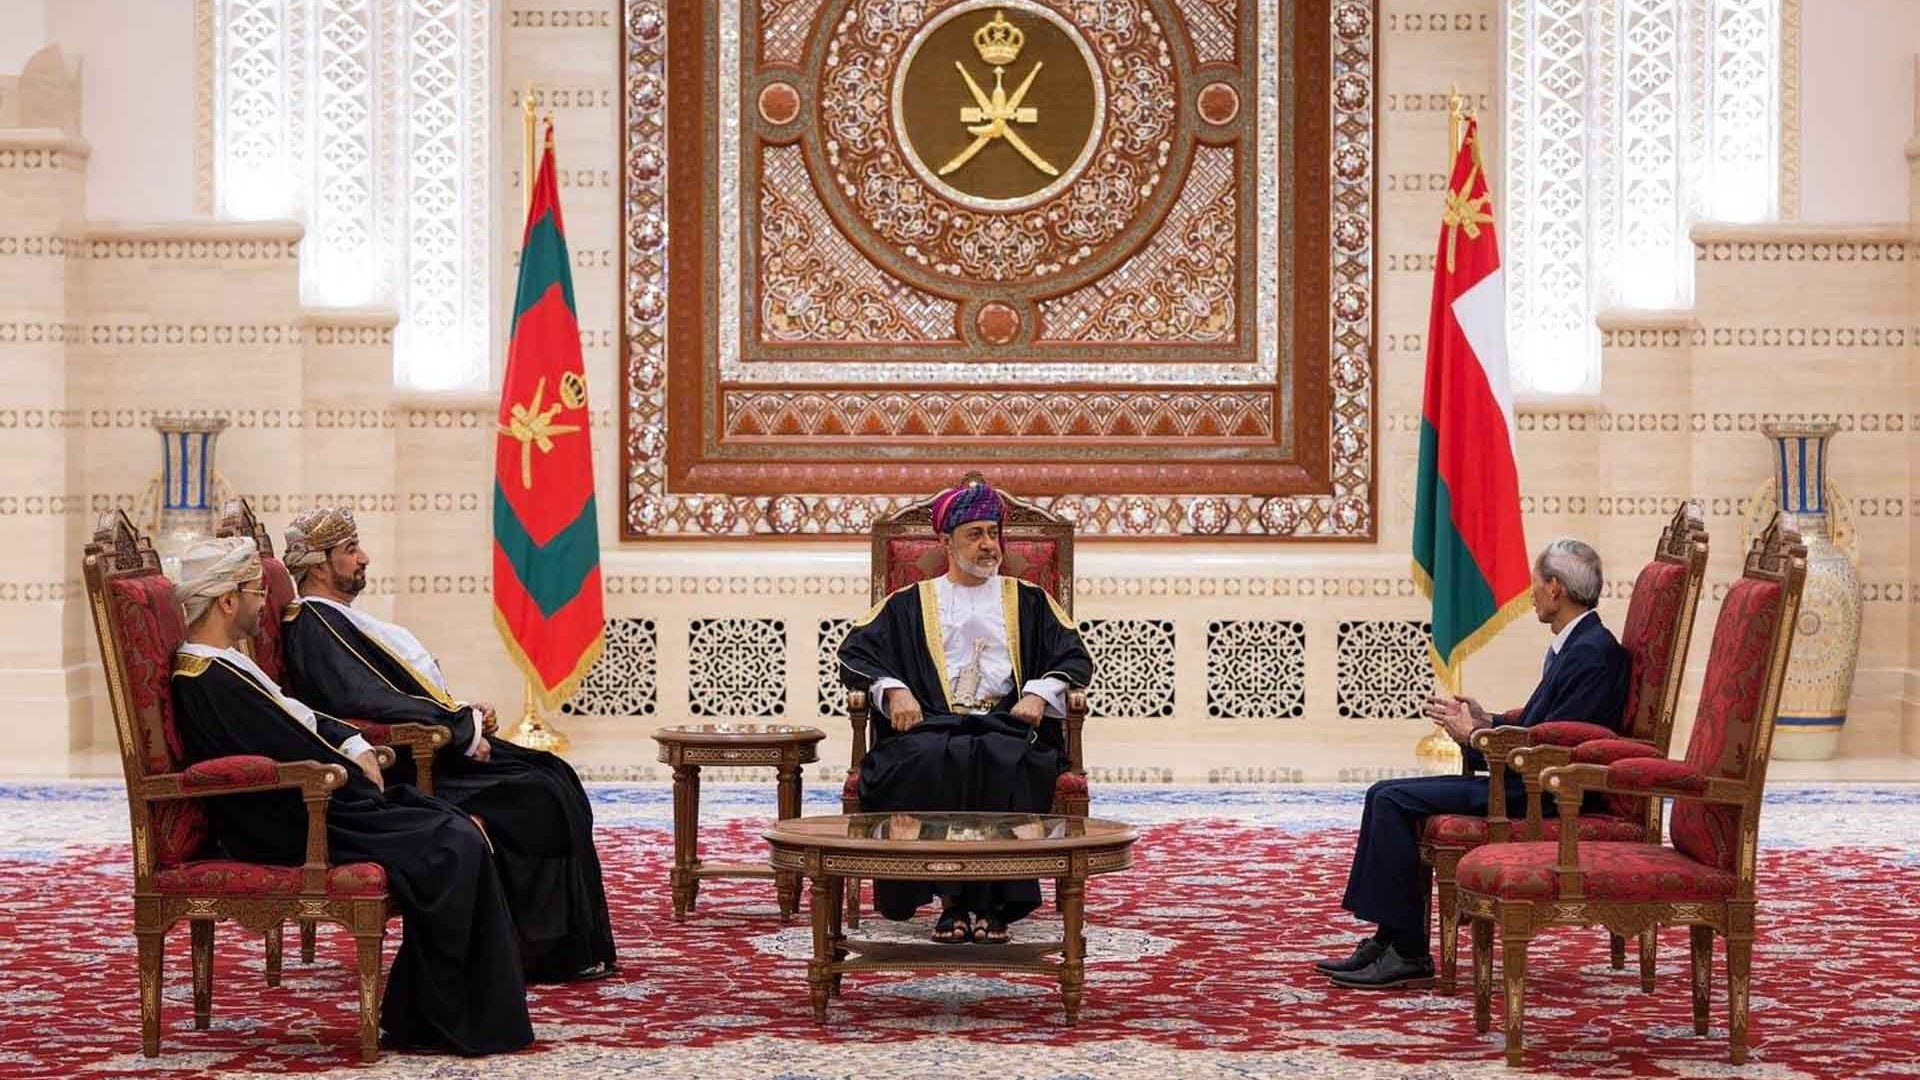 Đại sứ Đặng Xuân Dũng trình Thư ủy nhiệm lên Quốc vương Oman Haitham bin Tariq